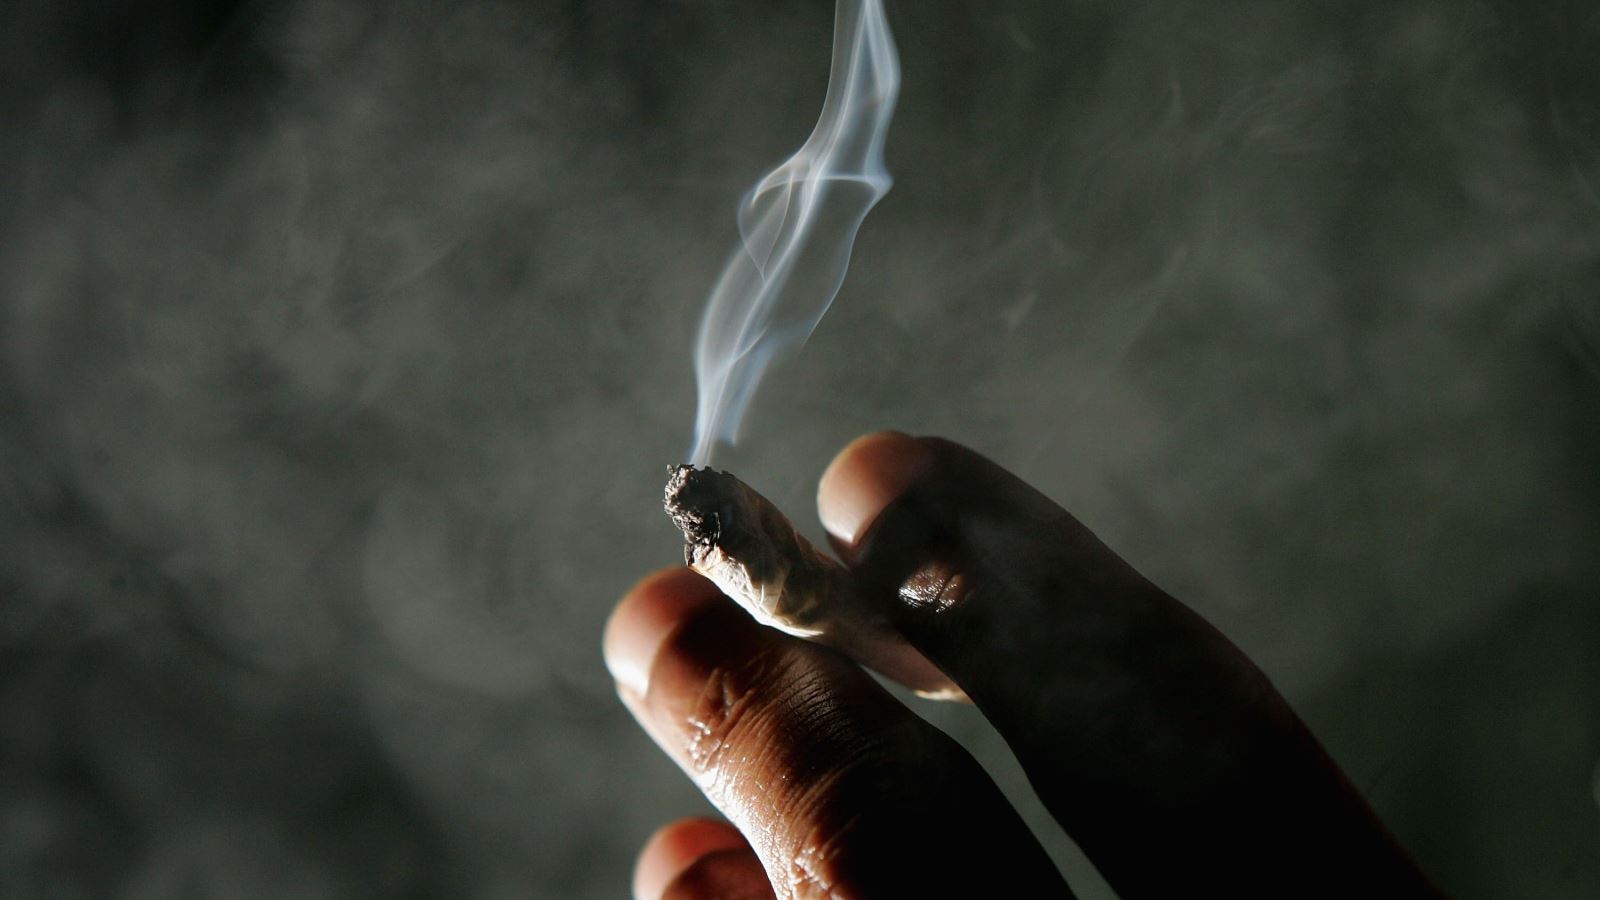 Long-held pot policies go up in smoke